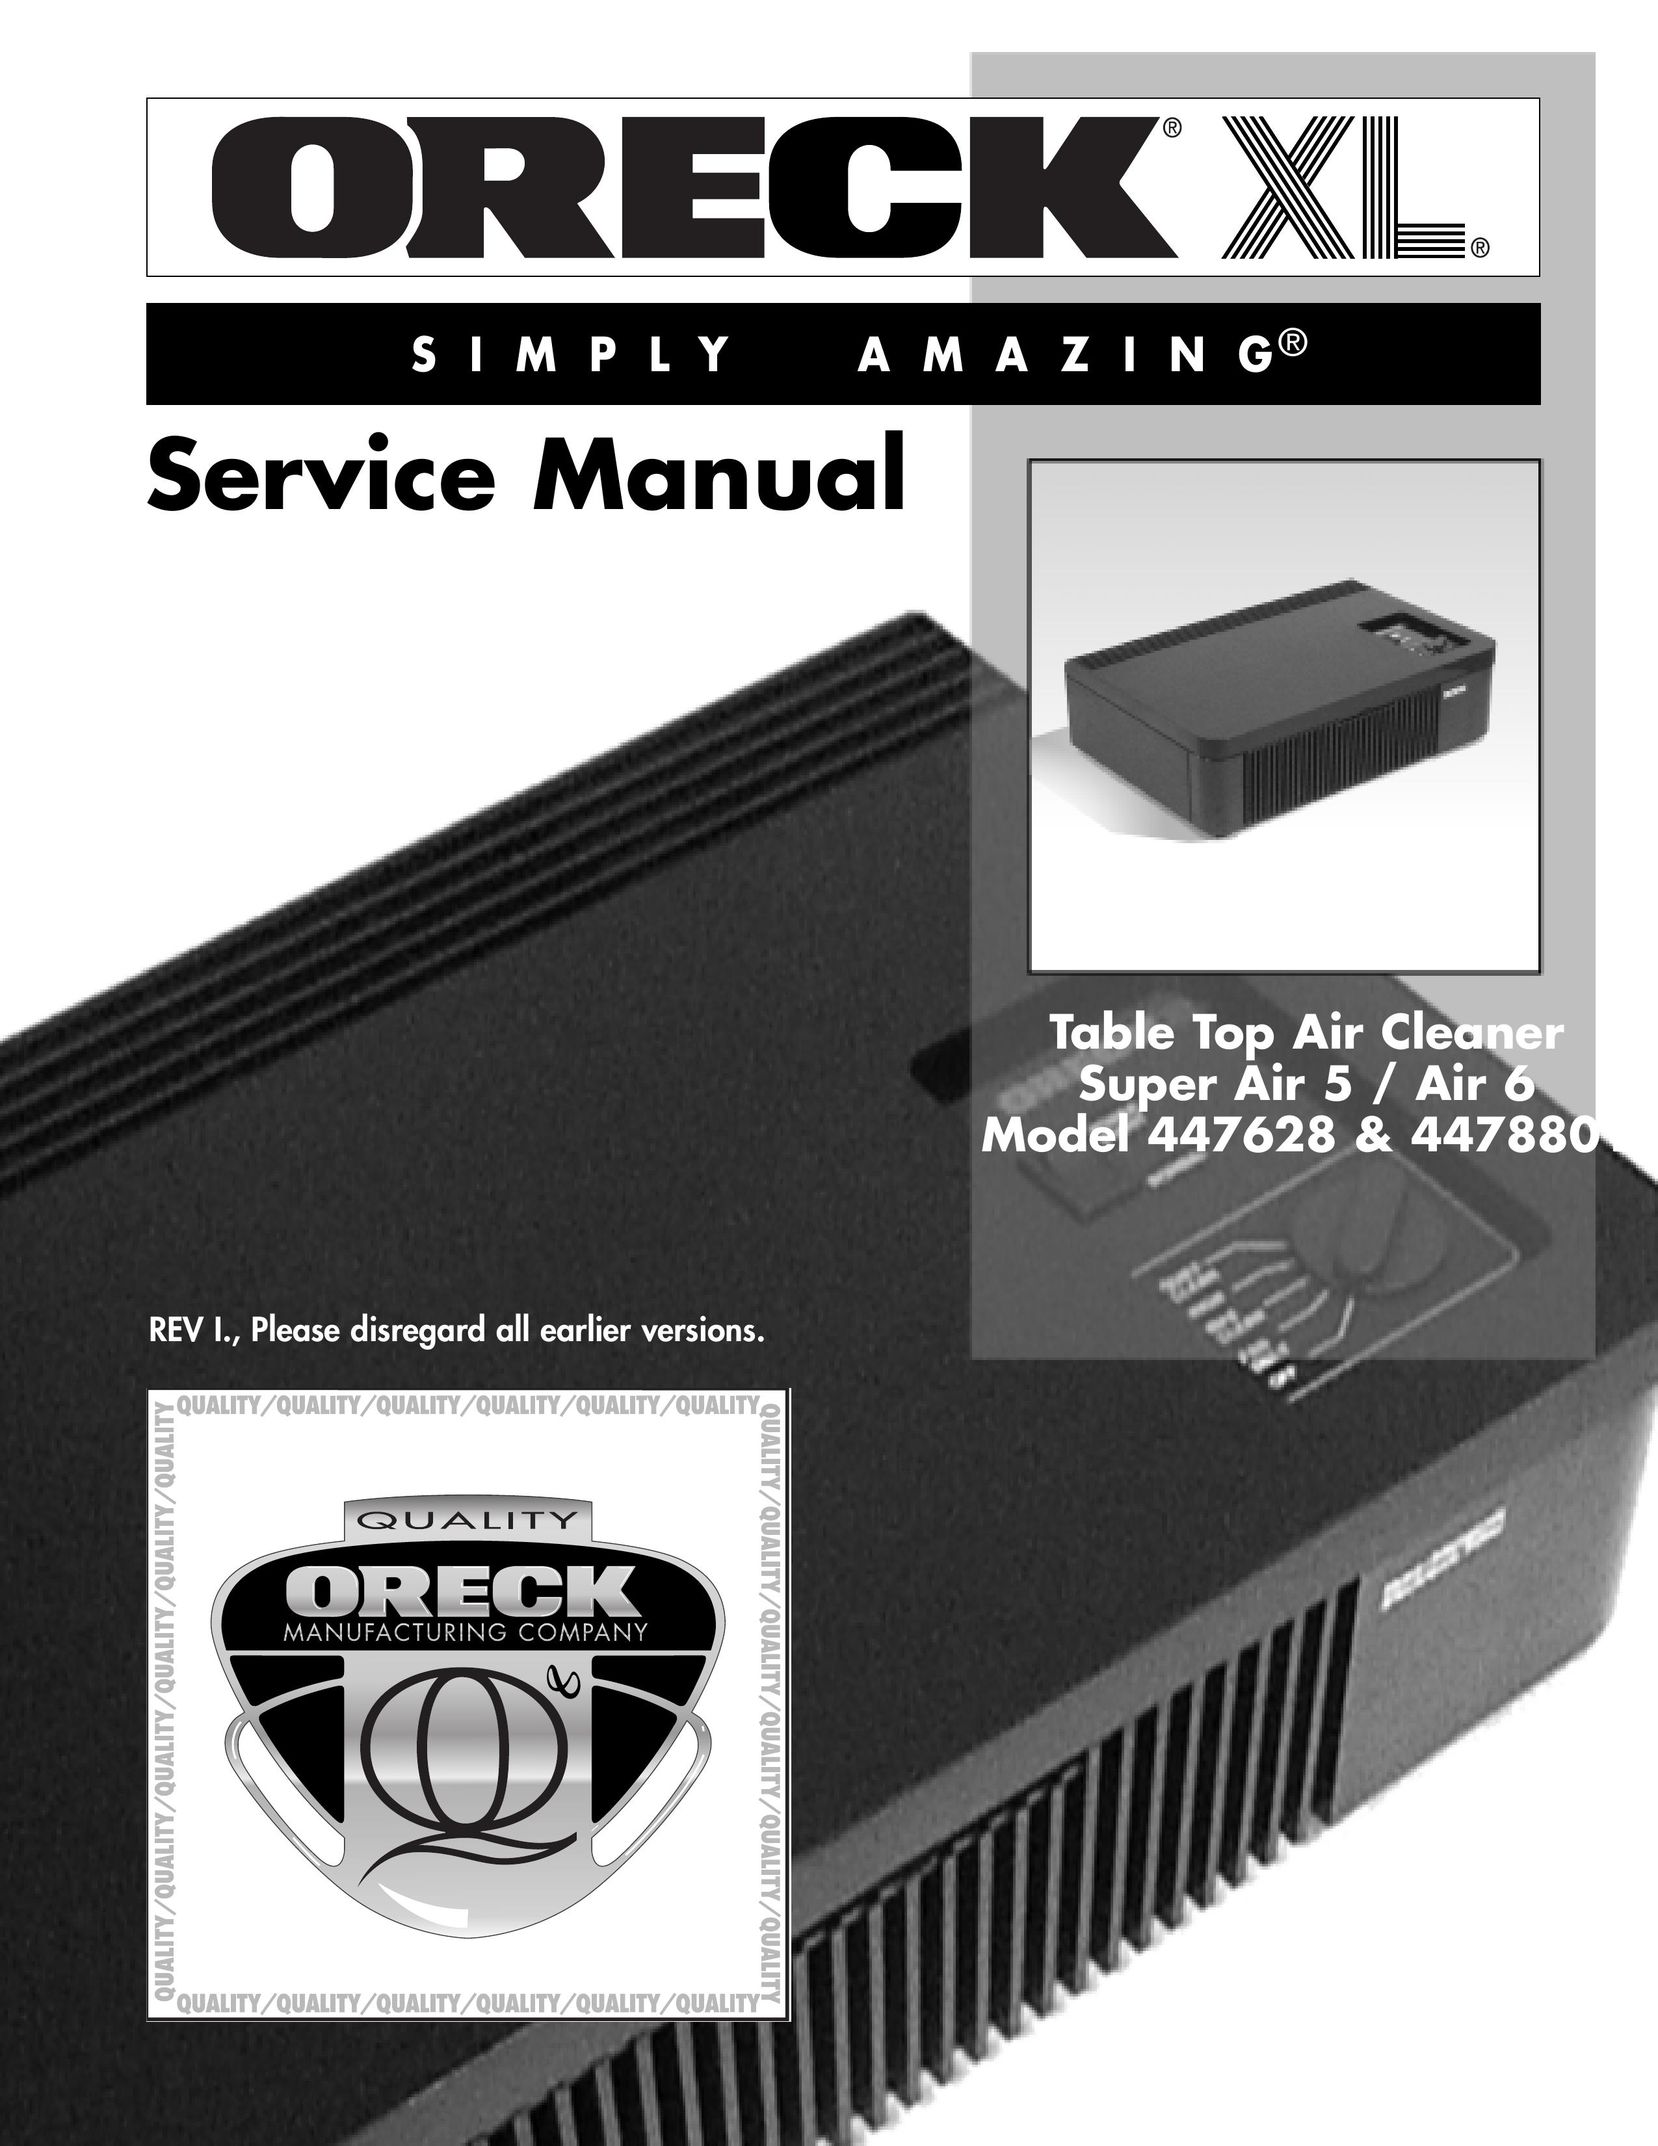 Oreck 447628 Air Cleaner User Manual